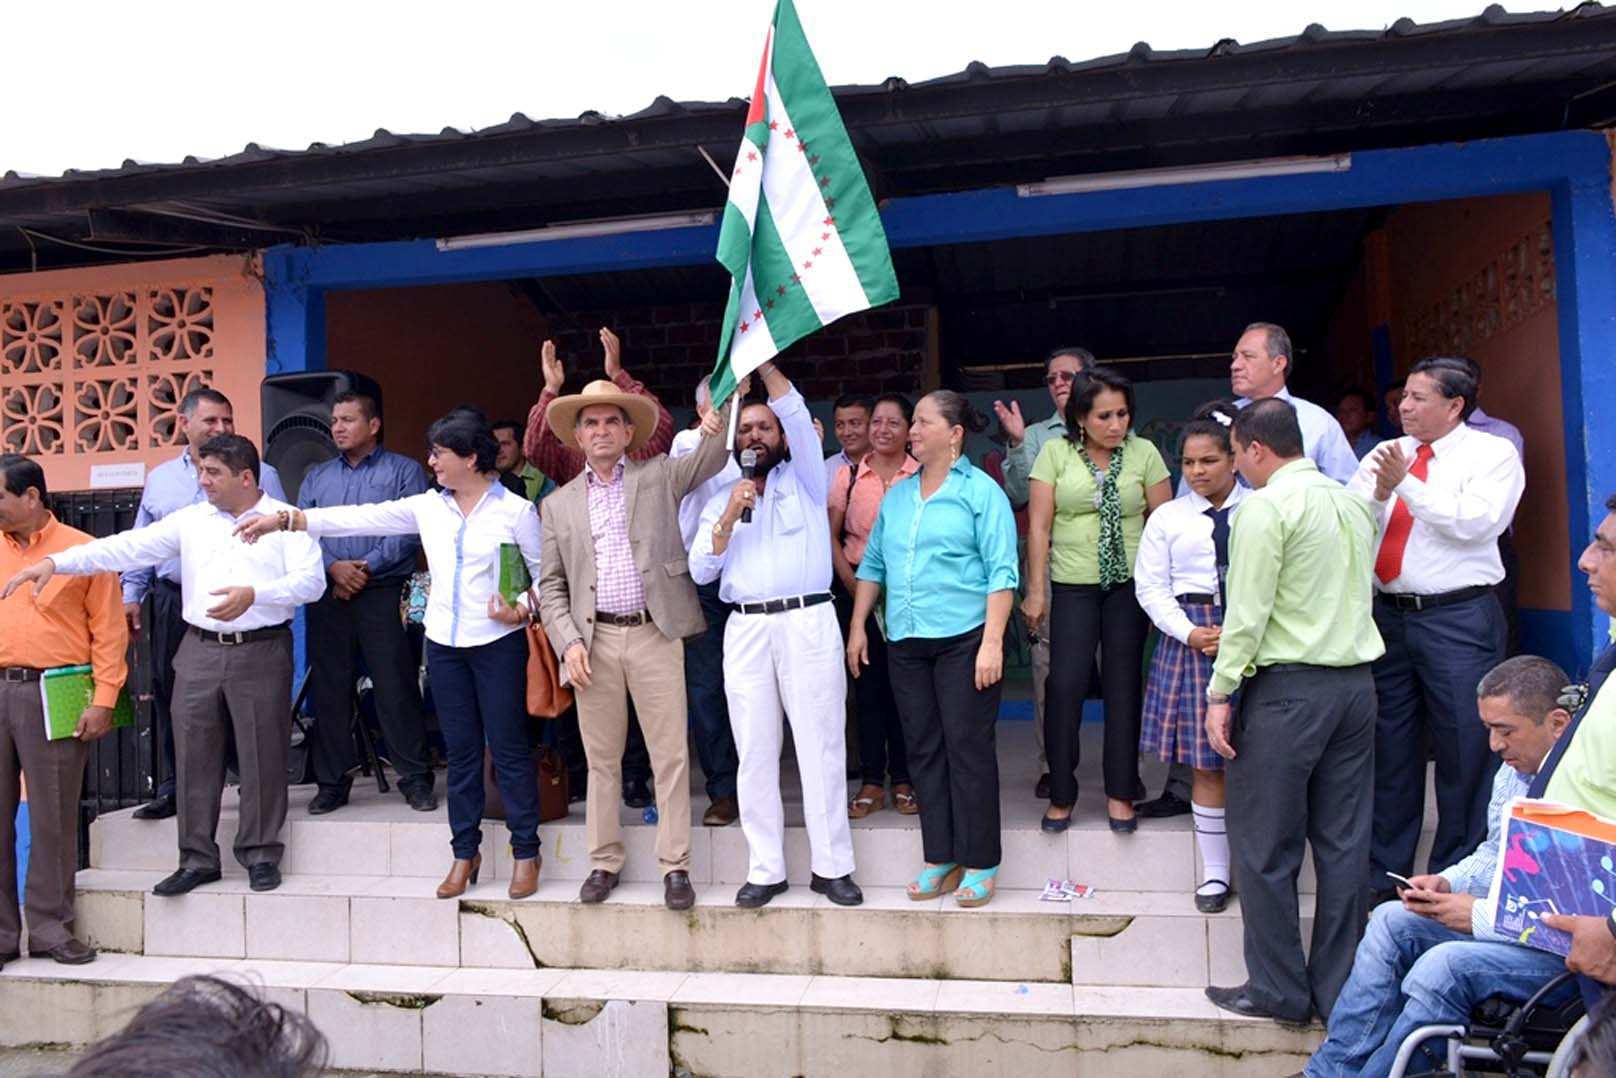 Clara Zambrano, viceprefecta, Mariano Zambrano, prefecto de Manabí y Hugo Cruz, alcalde de El Carmen, flamean bandera en El Paraiso la 14